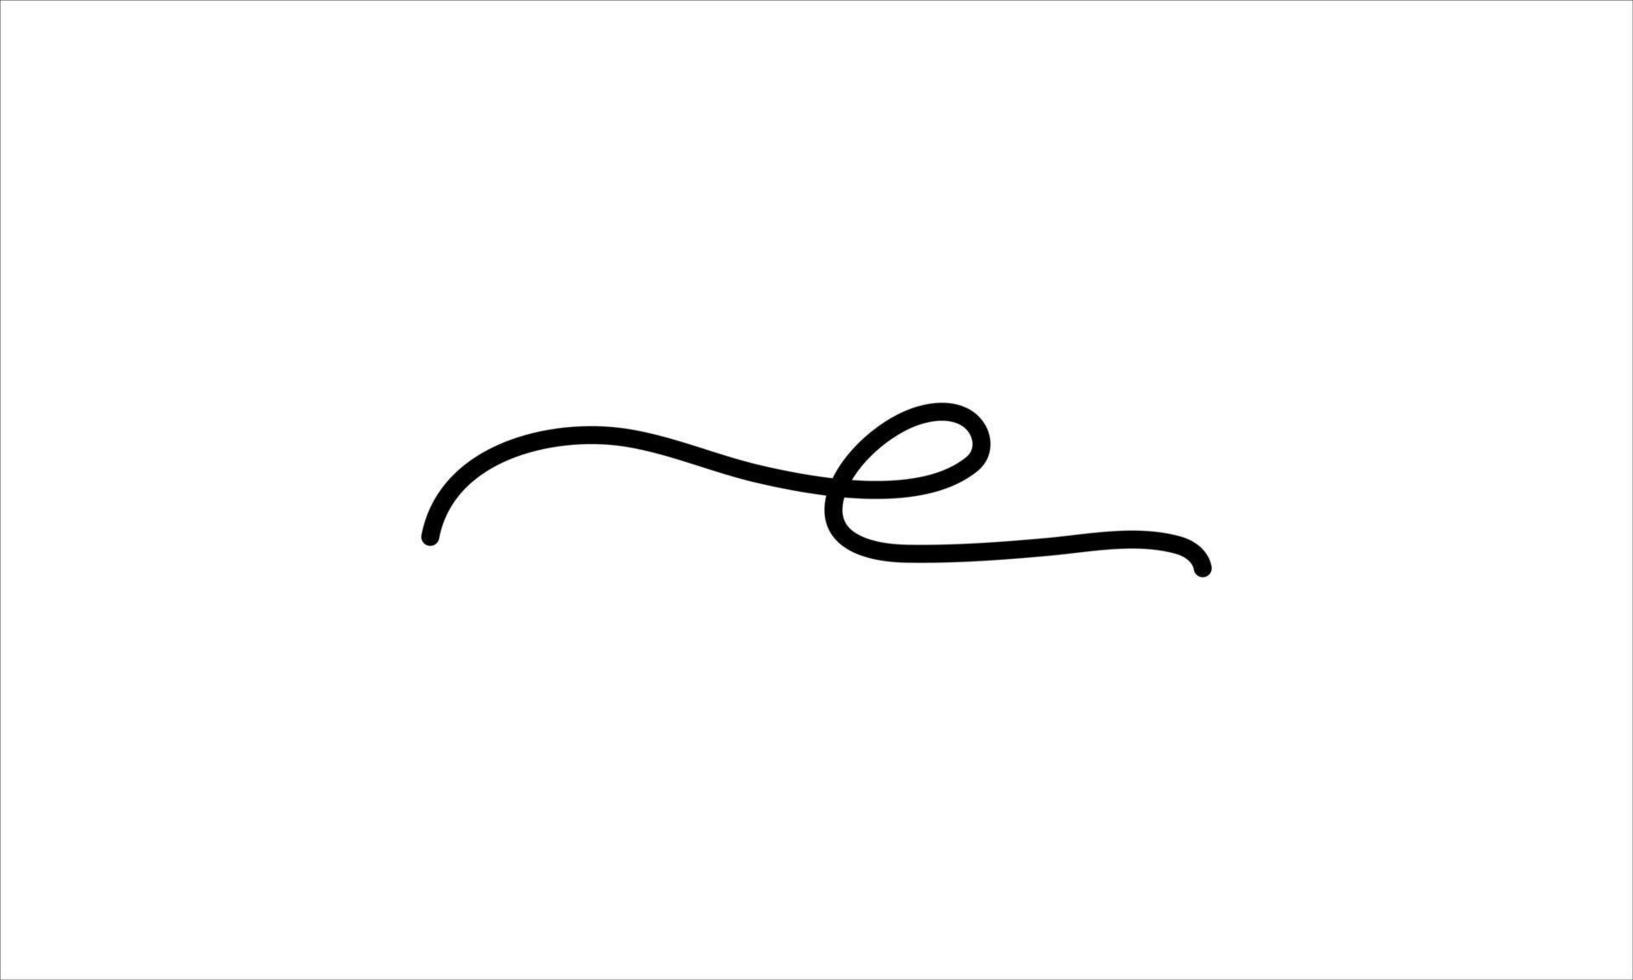 E letter logo. E. E logo icon design vector illustration.